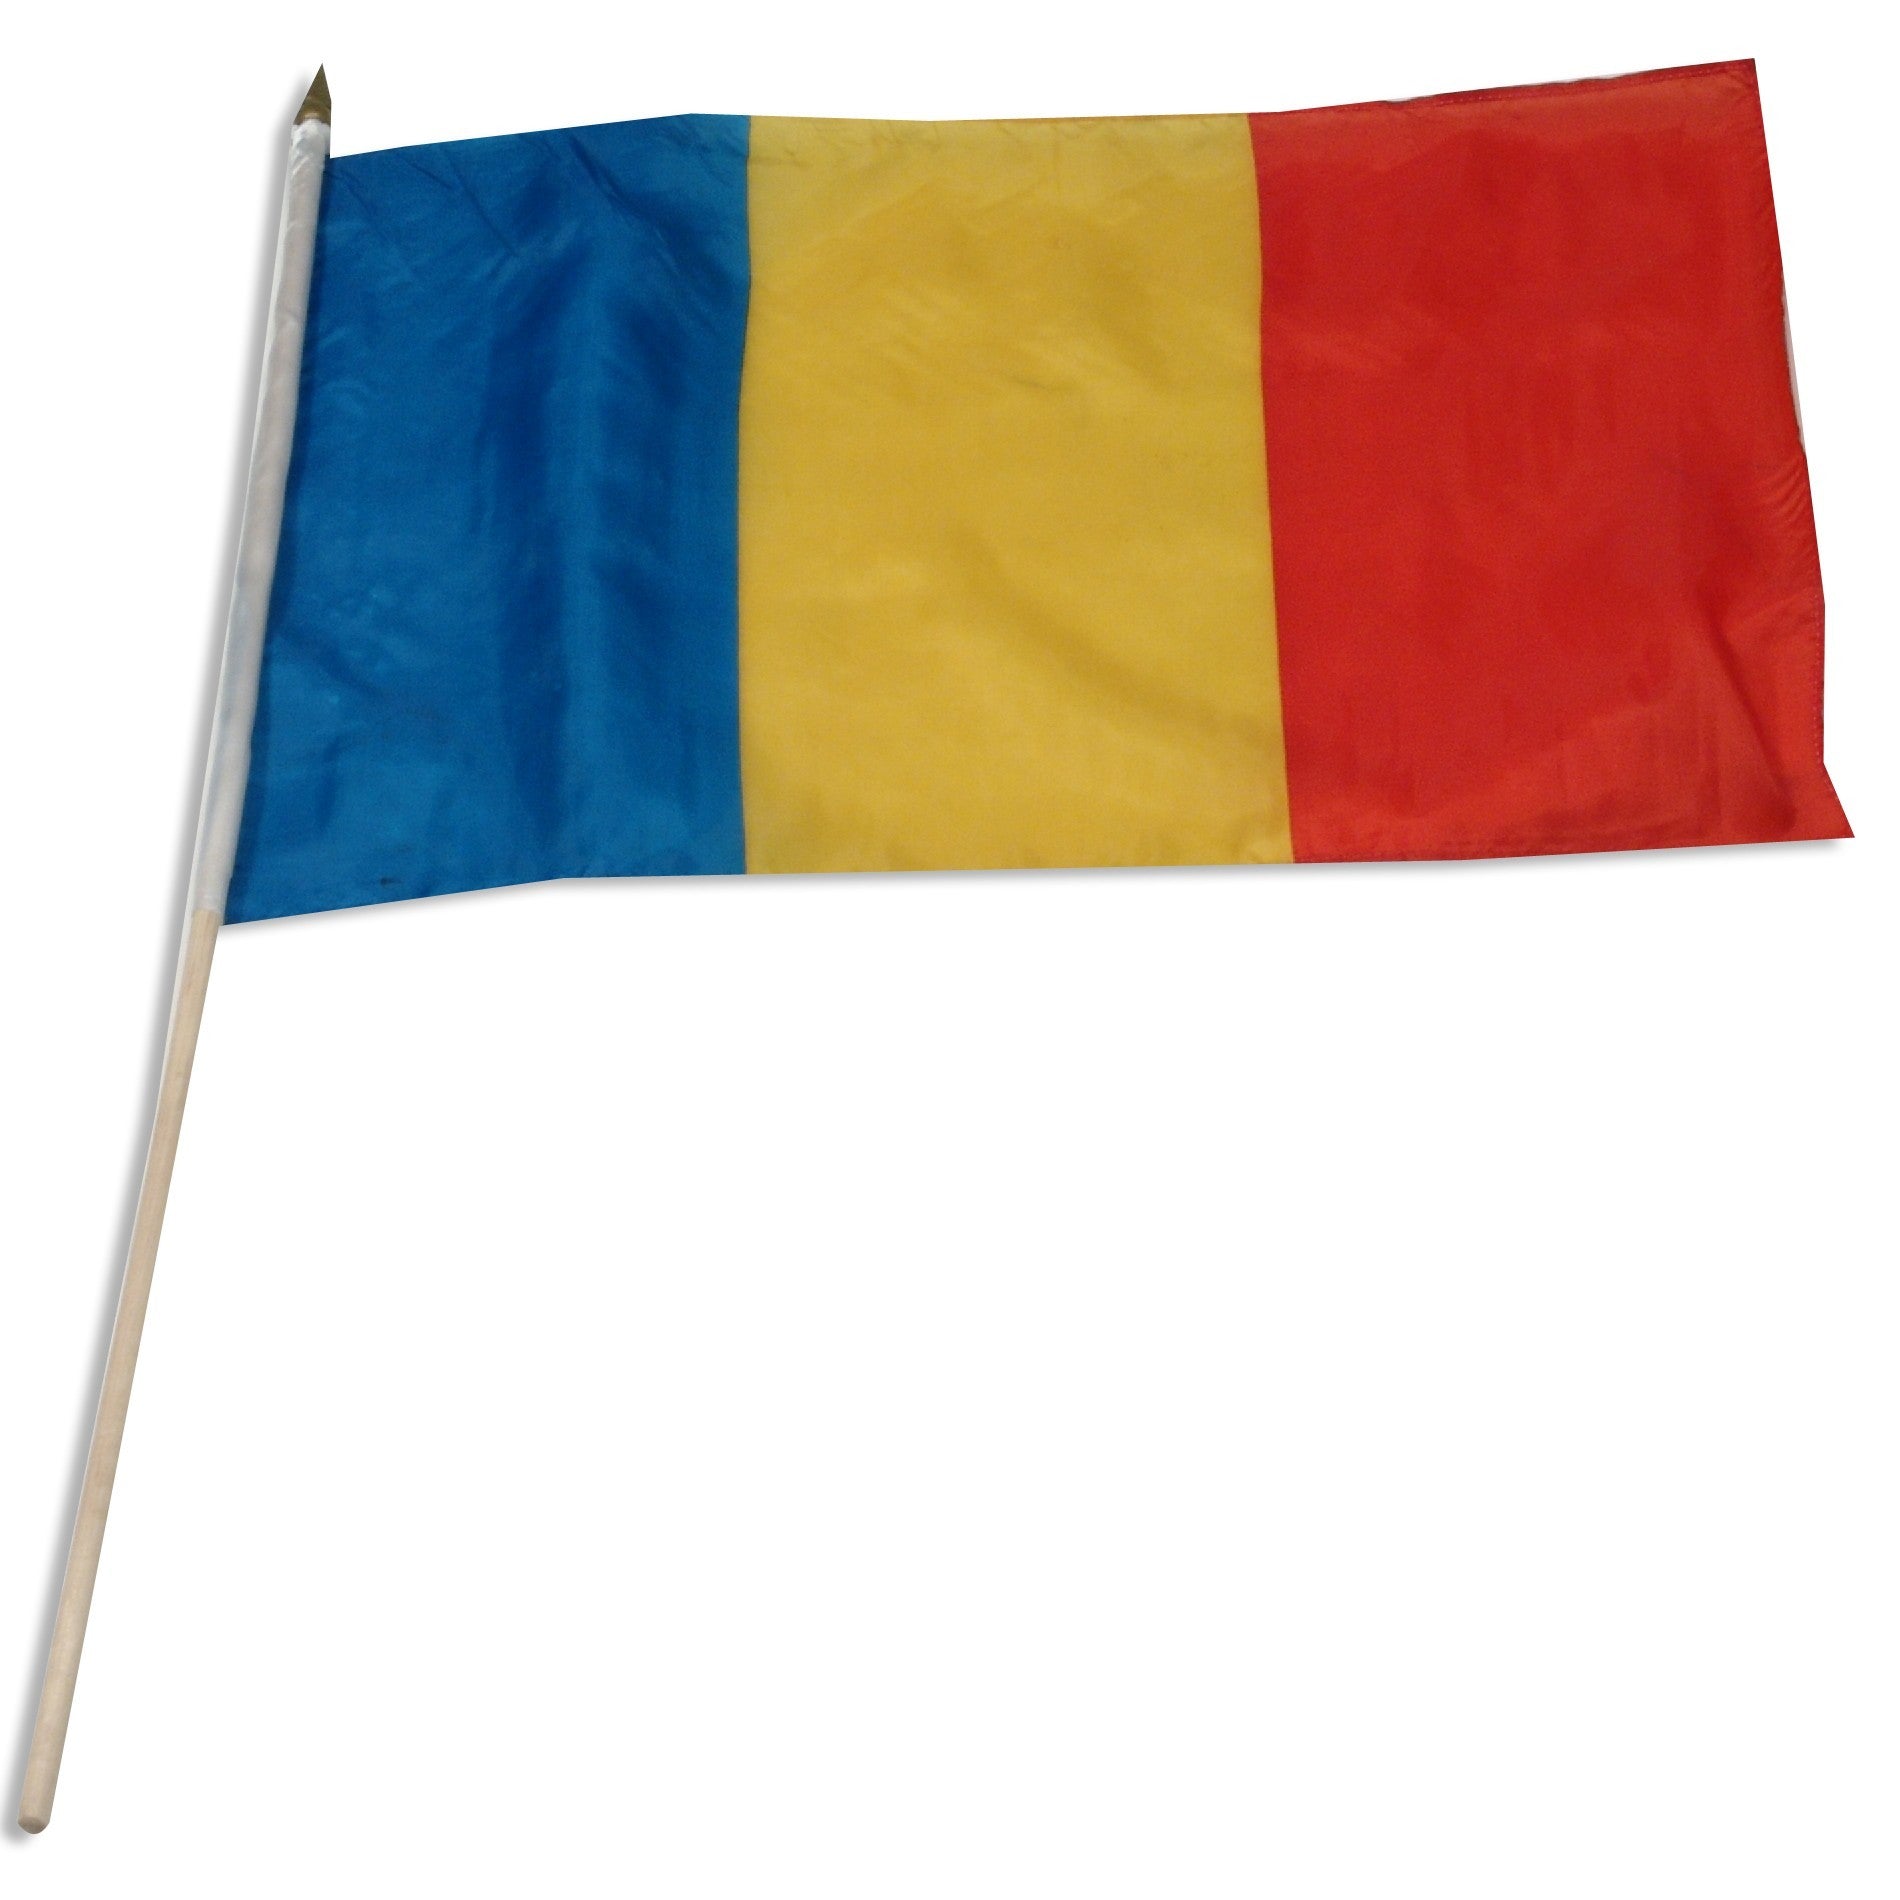 Romania 12" x 18" Mounted Flag